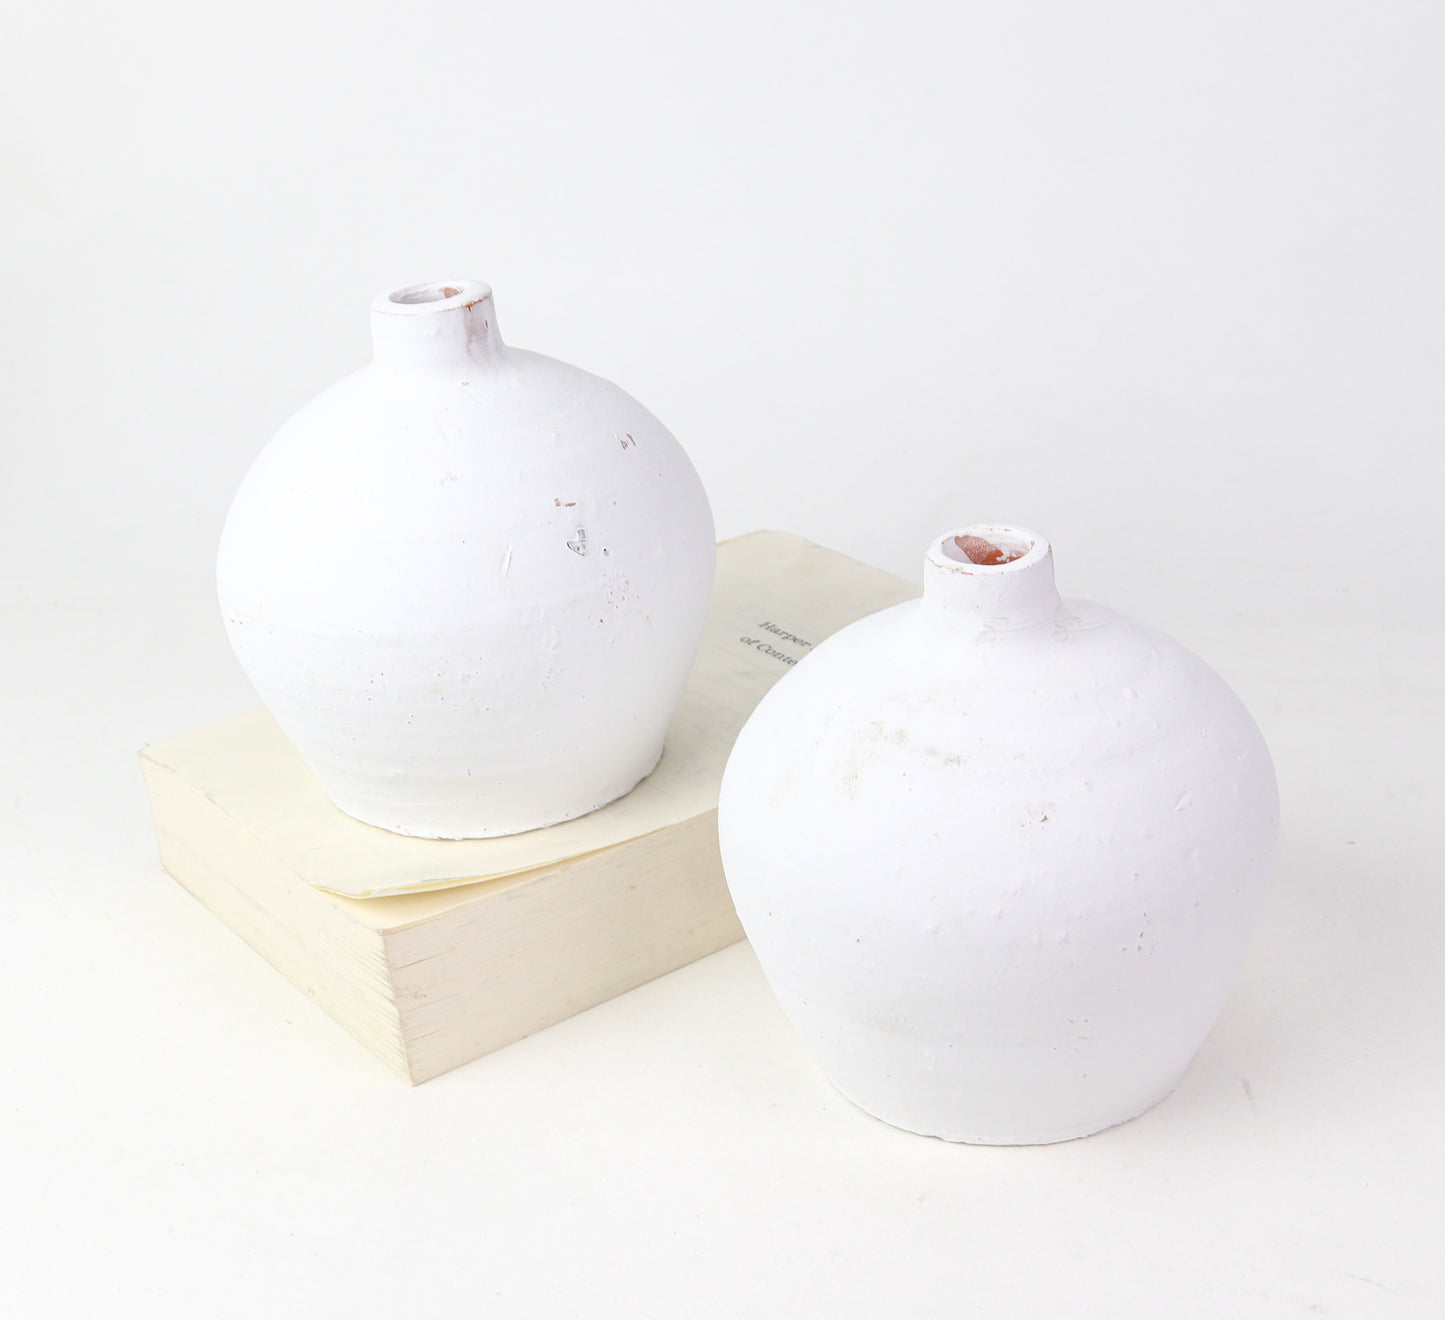 5" White Terra Vase